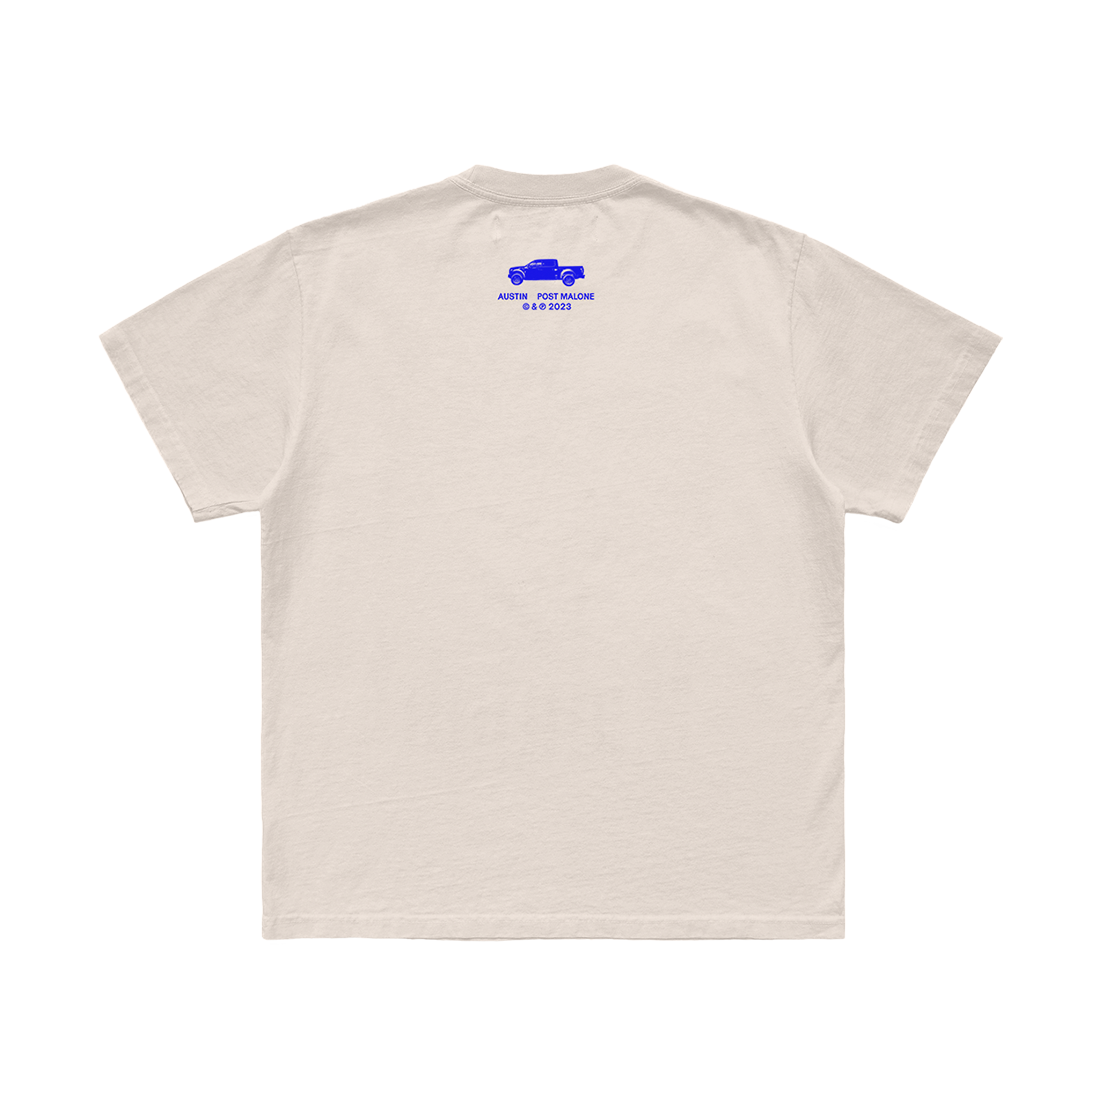 Post Malone - Austin T-Shirt